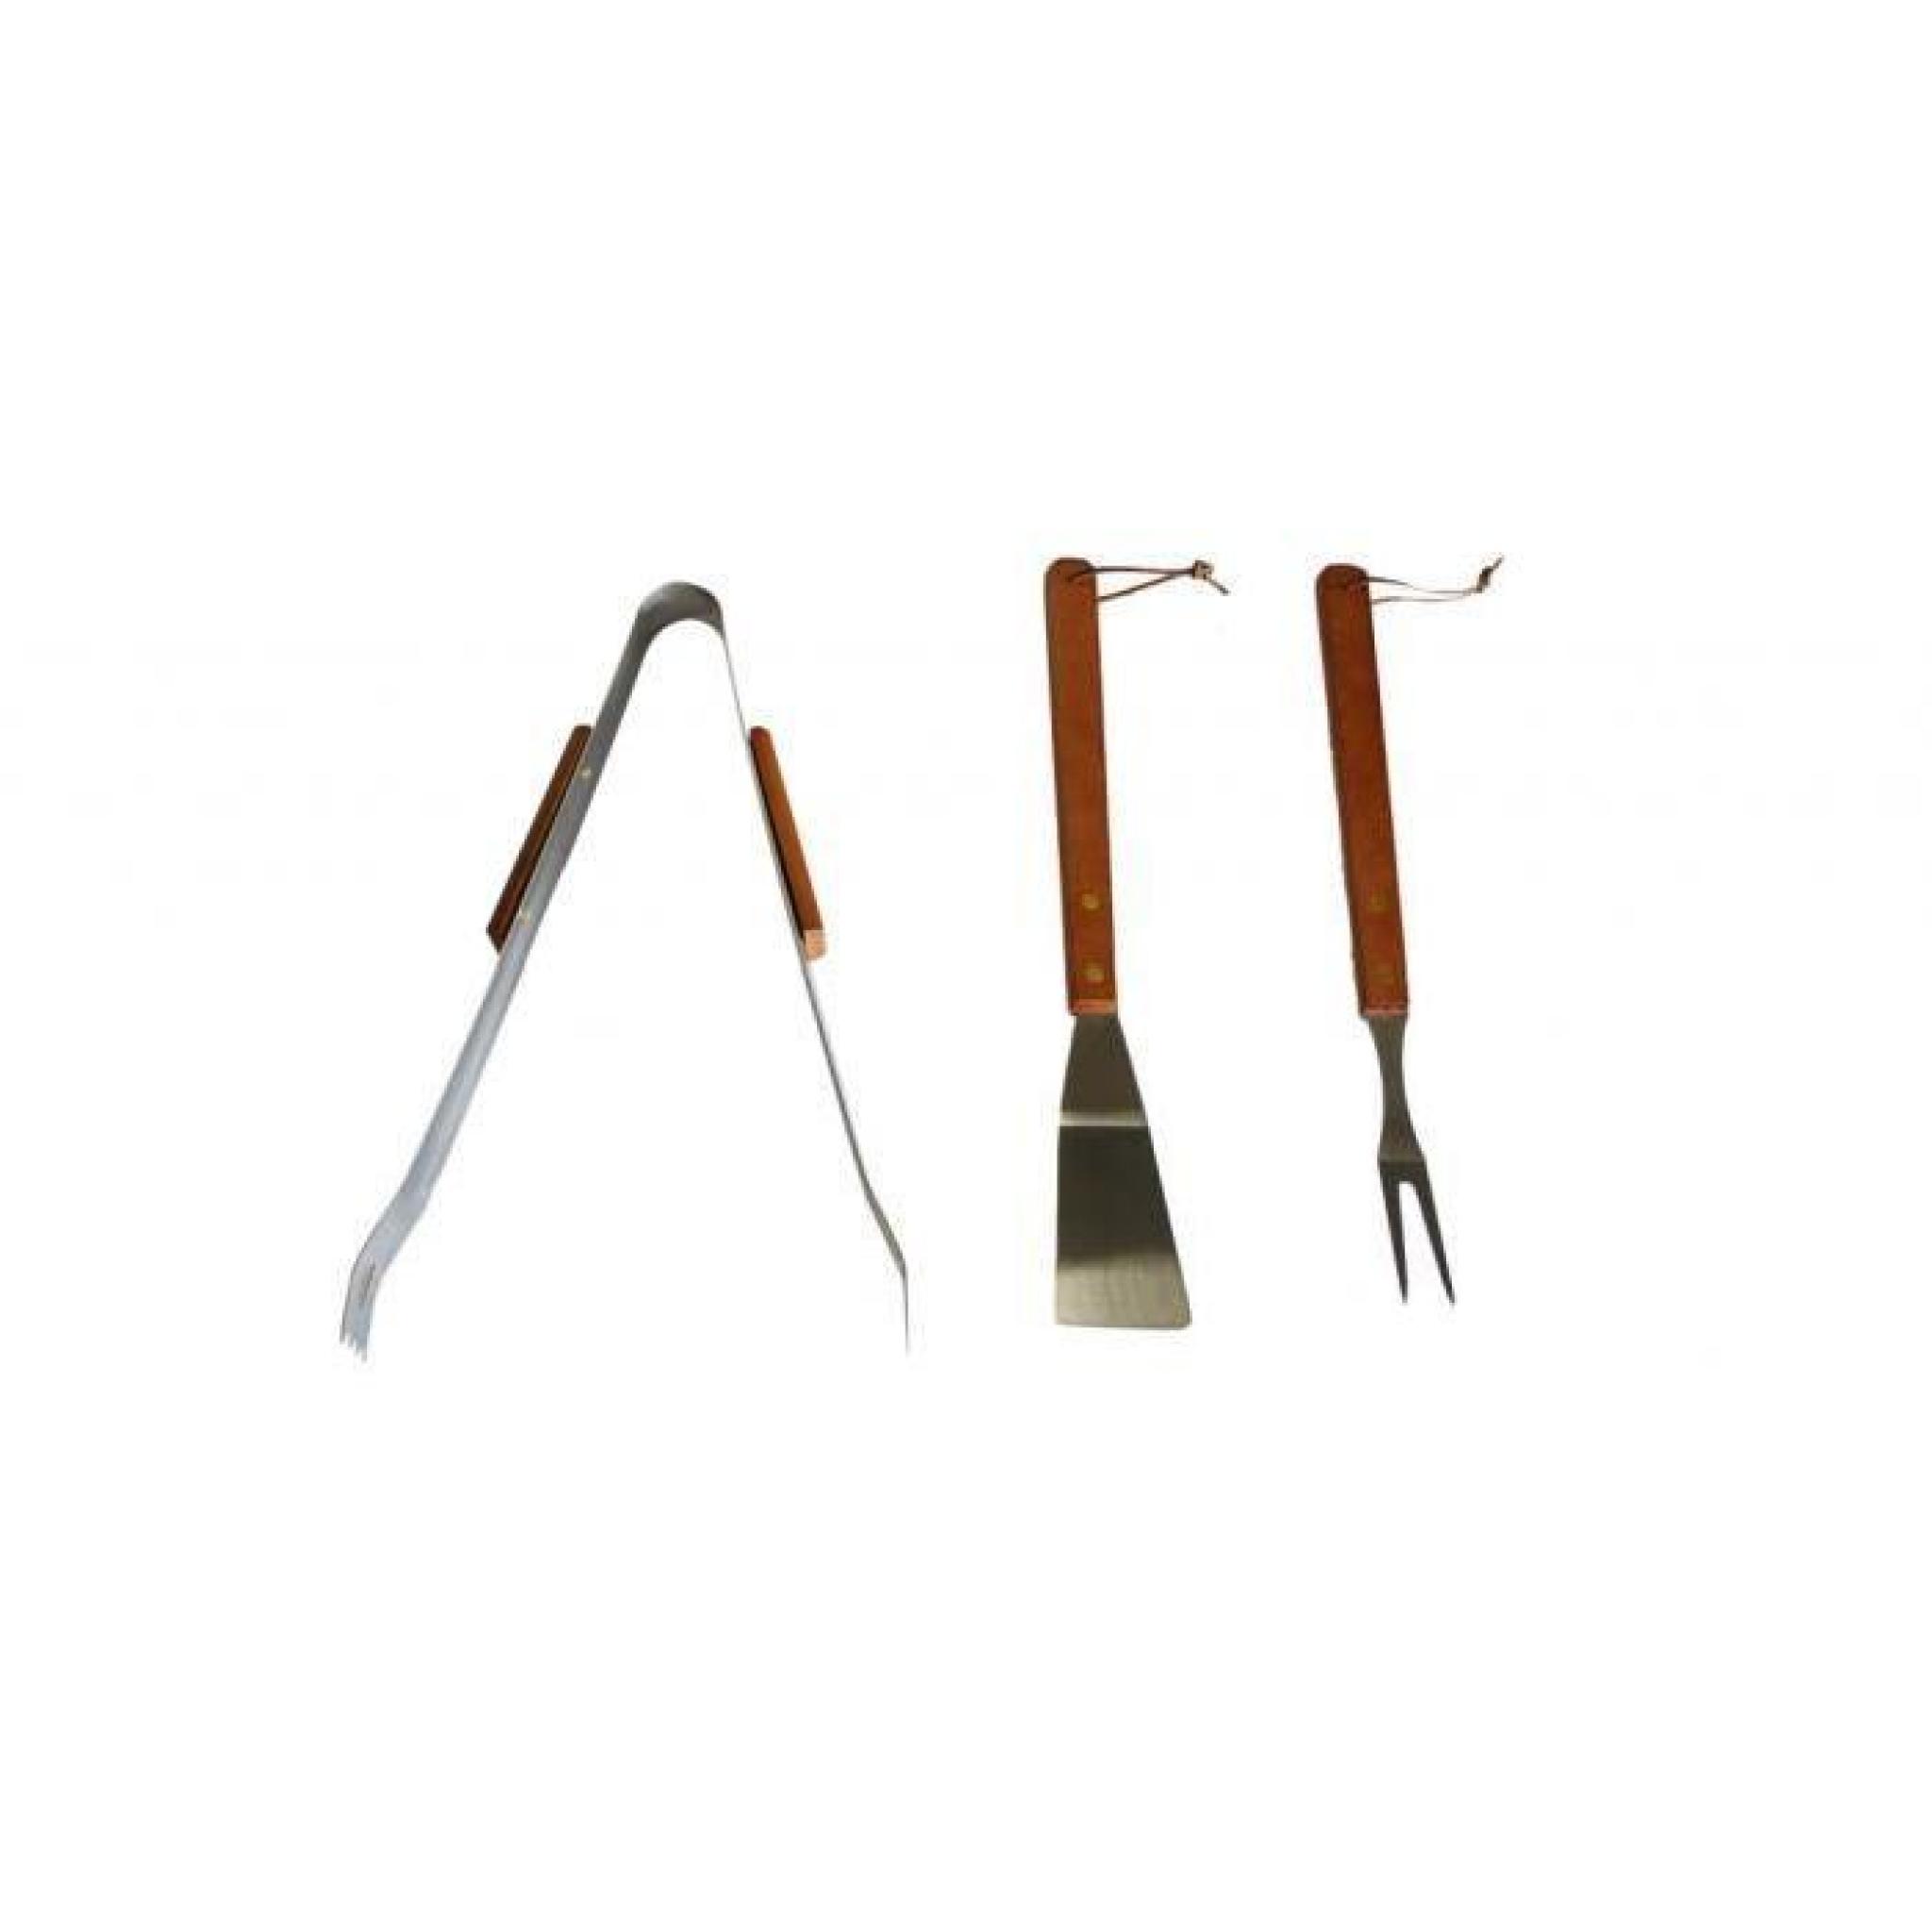 Un ensemble de 3 ustensiles en inoxydable: une pince, une fourchette et une spatule. Les pièces ont un manche en bois. Ces trois ...